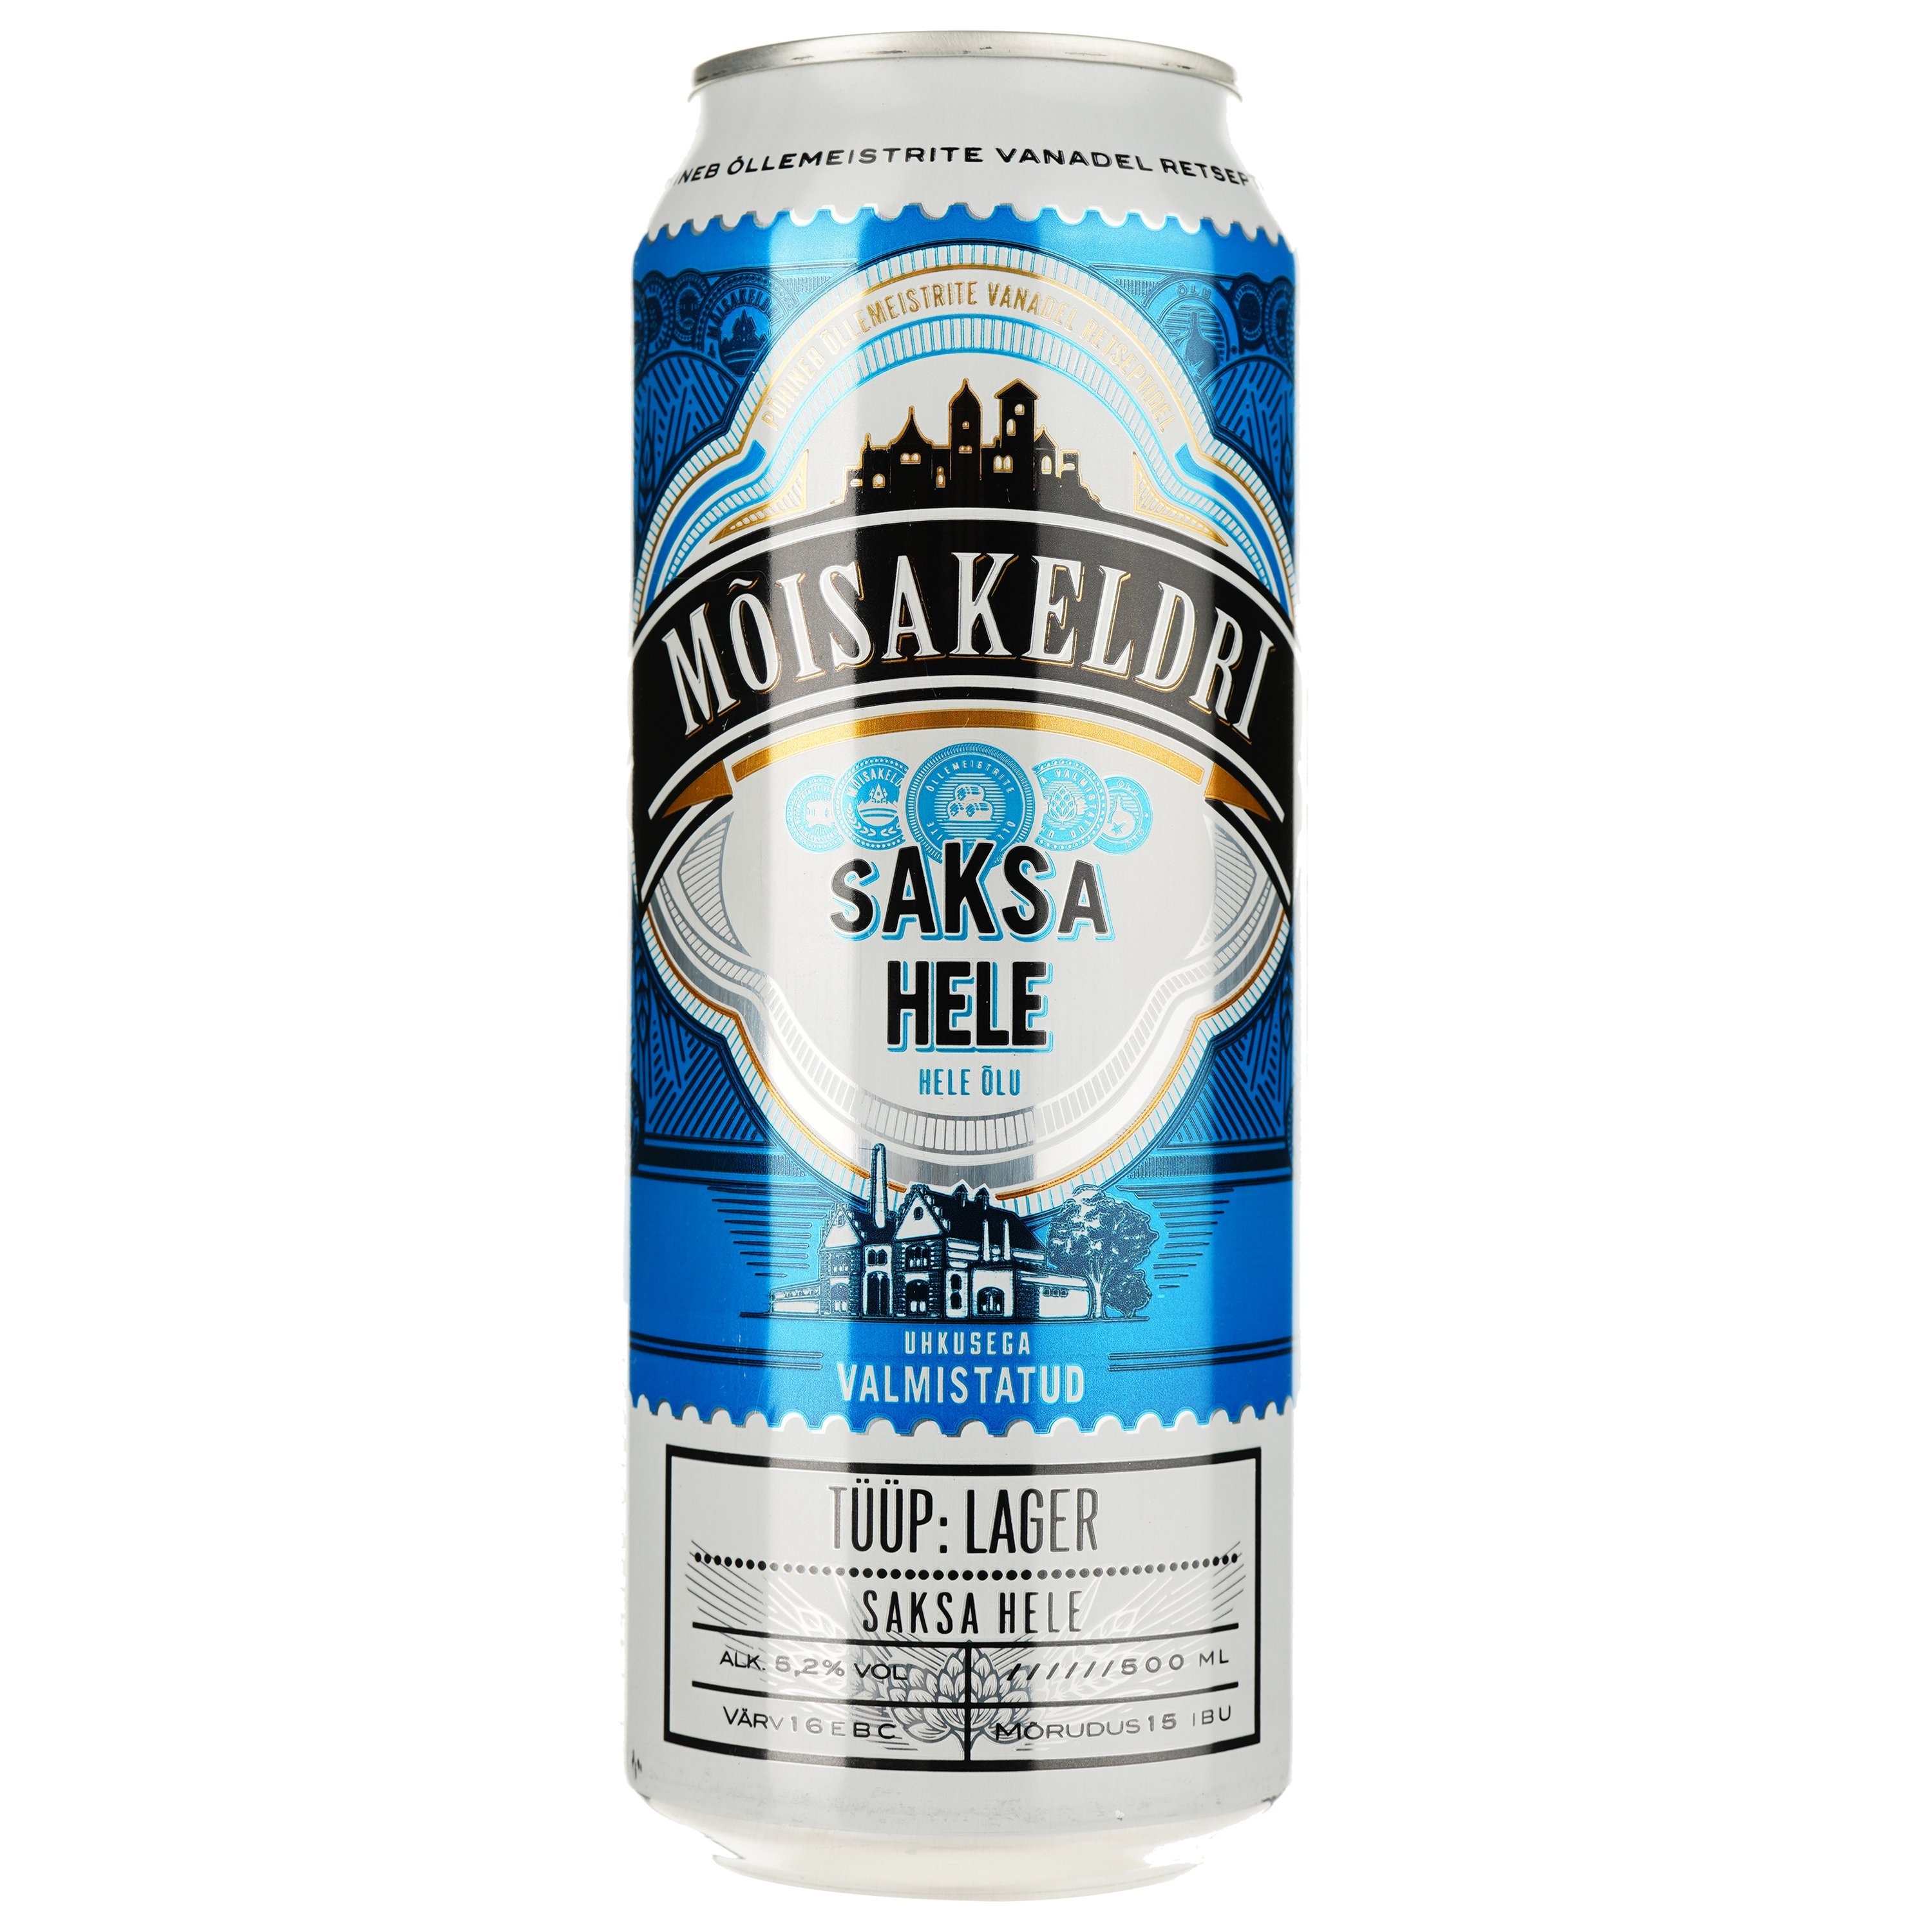 Пиво Moisakeldri Saksa Hele светлое 5.2% 0.5 л ж/б - фото 1